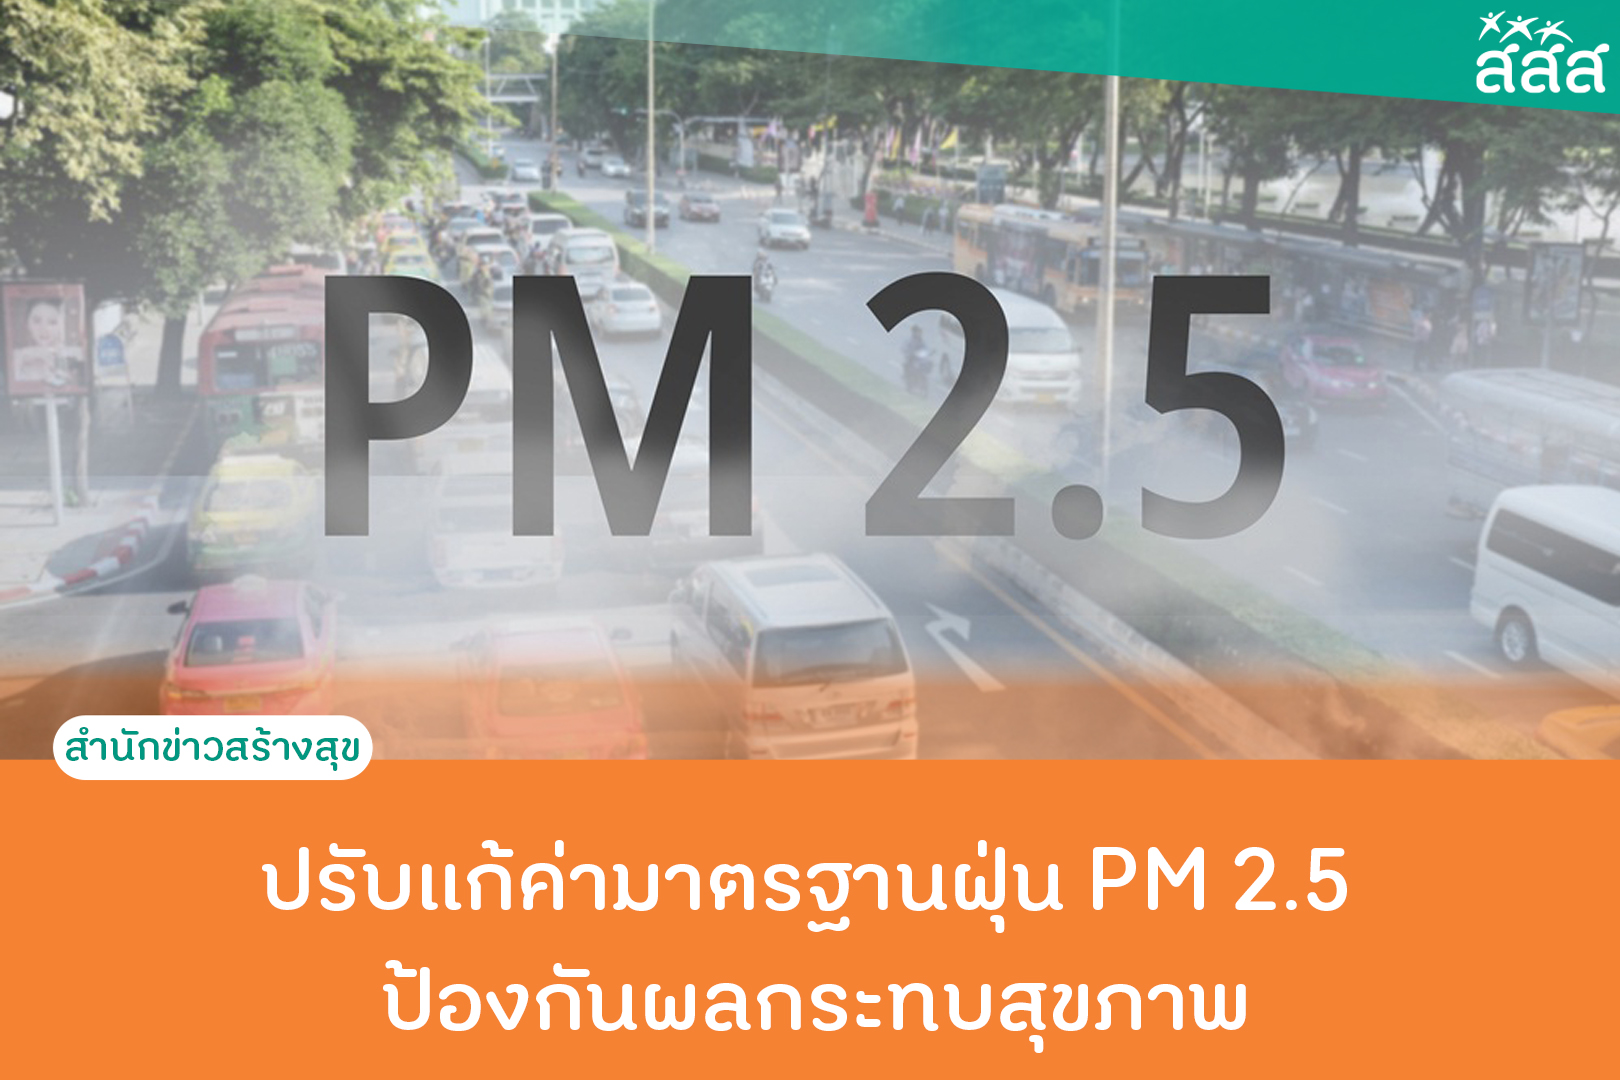 ปรับแก้ค่ามาตรฐานฝุ่น PM 2.5 ป้องกันผลกระทบสุขภาพ thaihealth